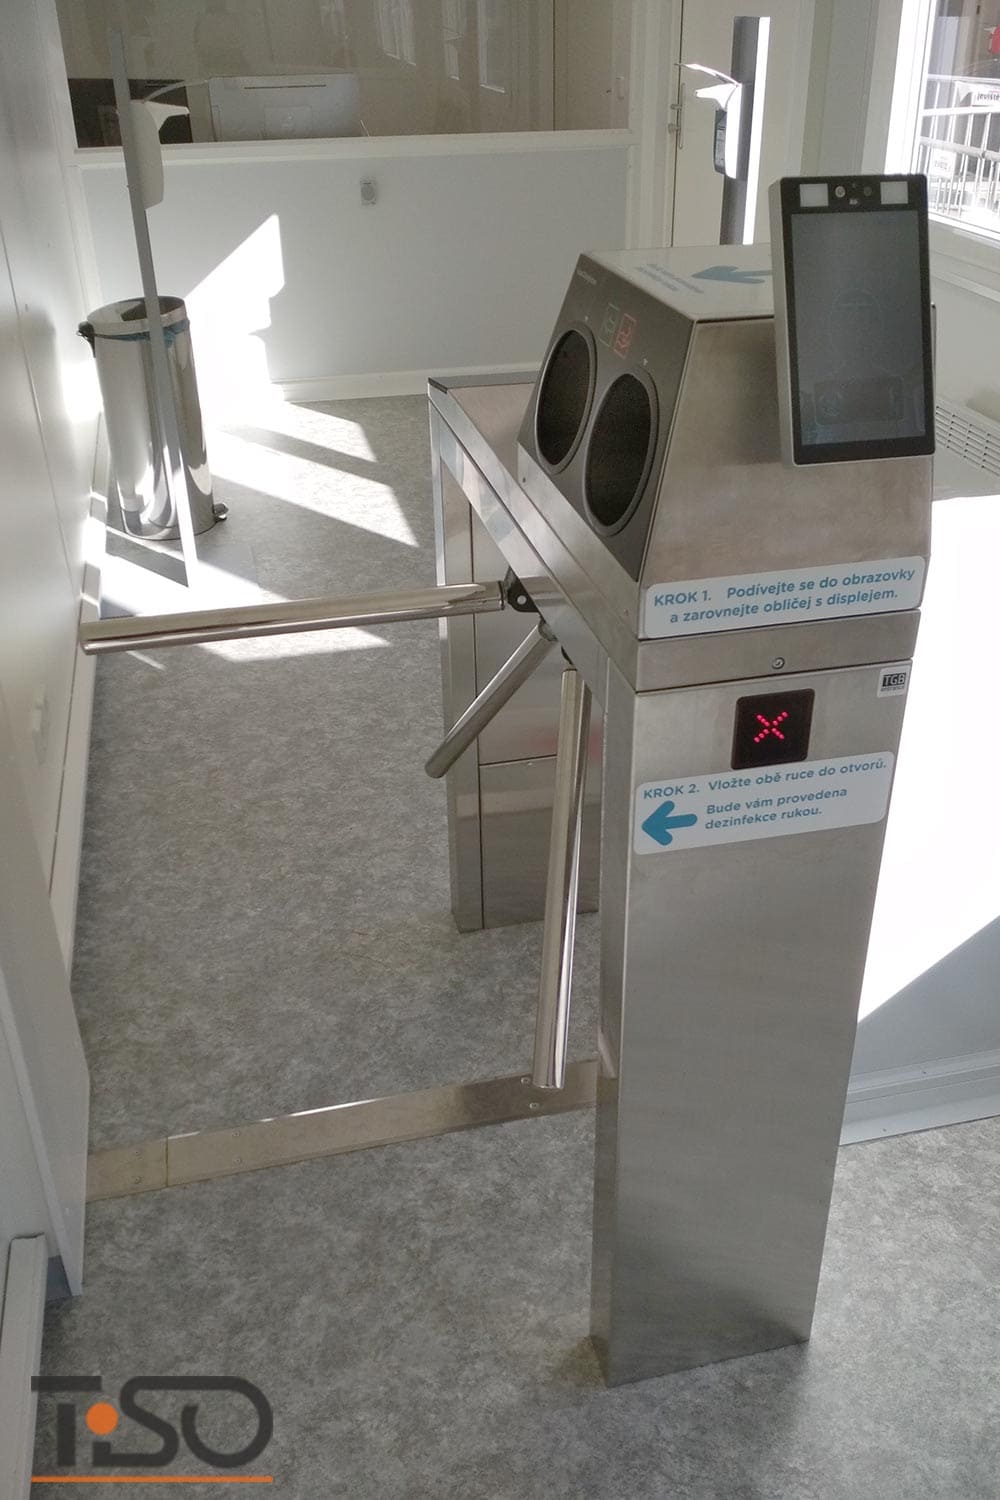 Twix-M et système de désinfection automatique des mains, hôpital Horovice, République tchèque